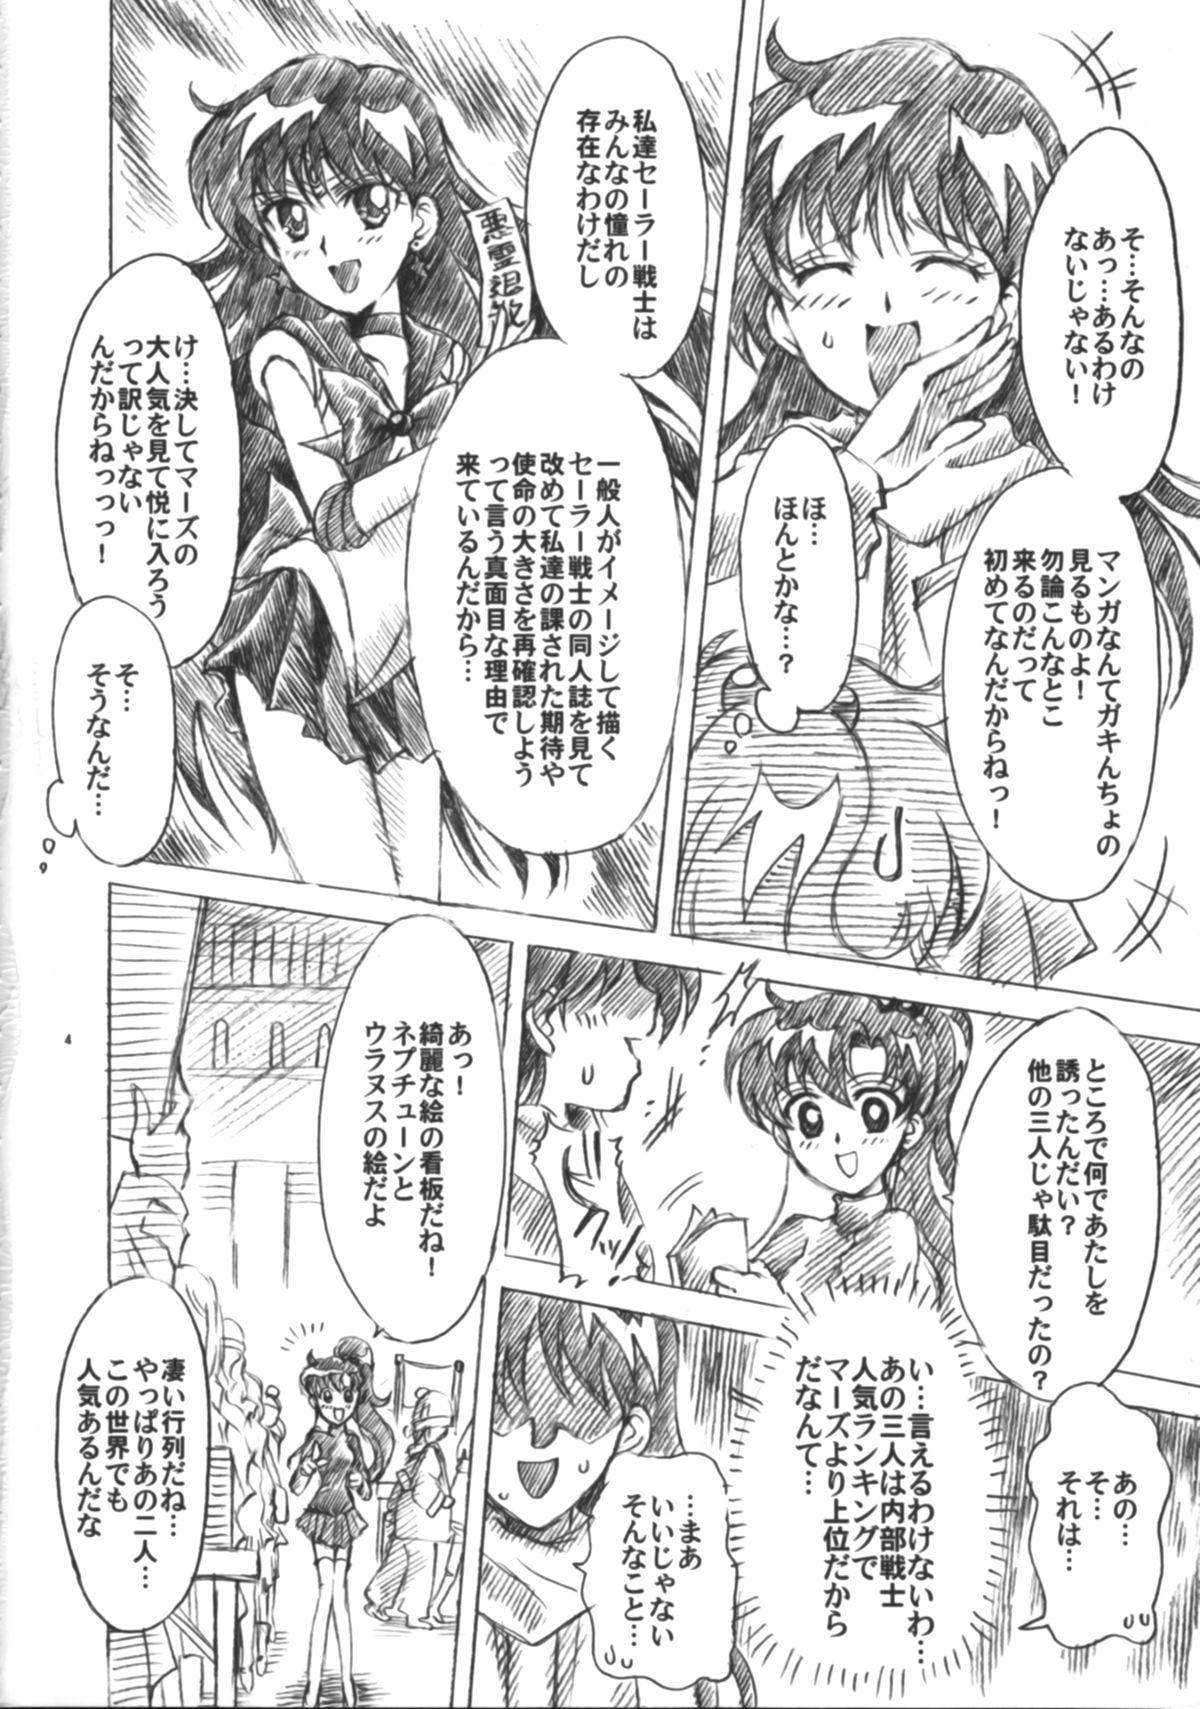 Pinay Boku no Kanojo wa Sailor Senshi 6 - Sailor moon Scandal - Page 5